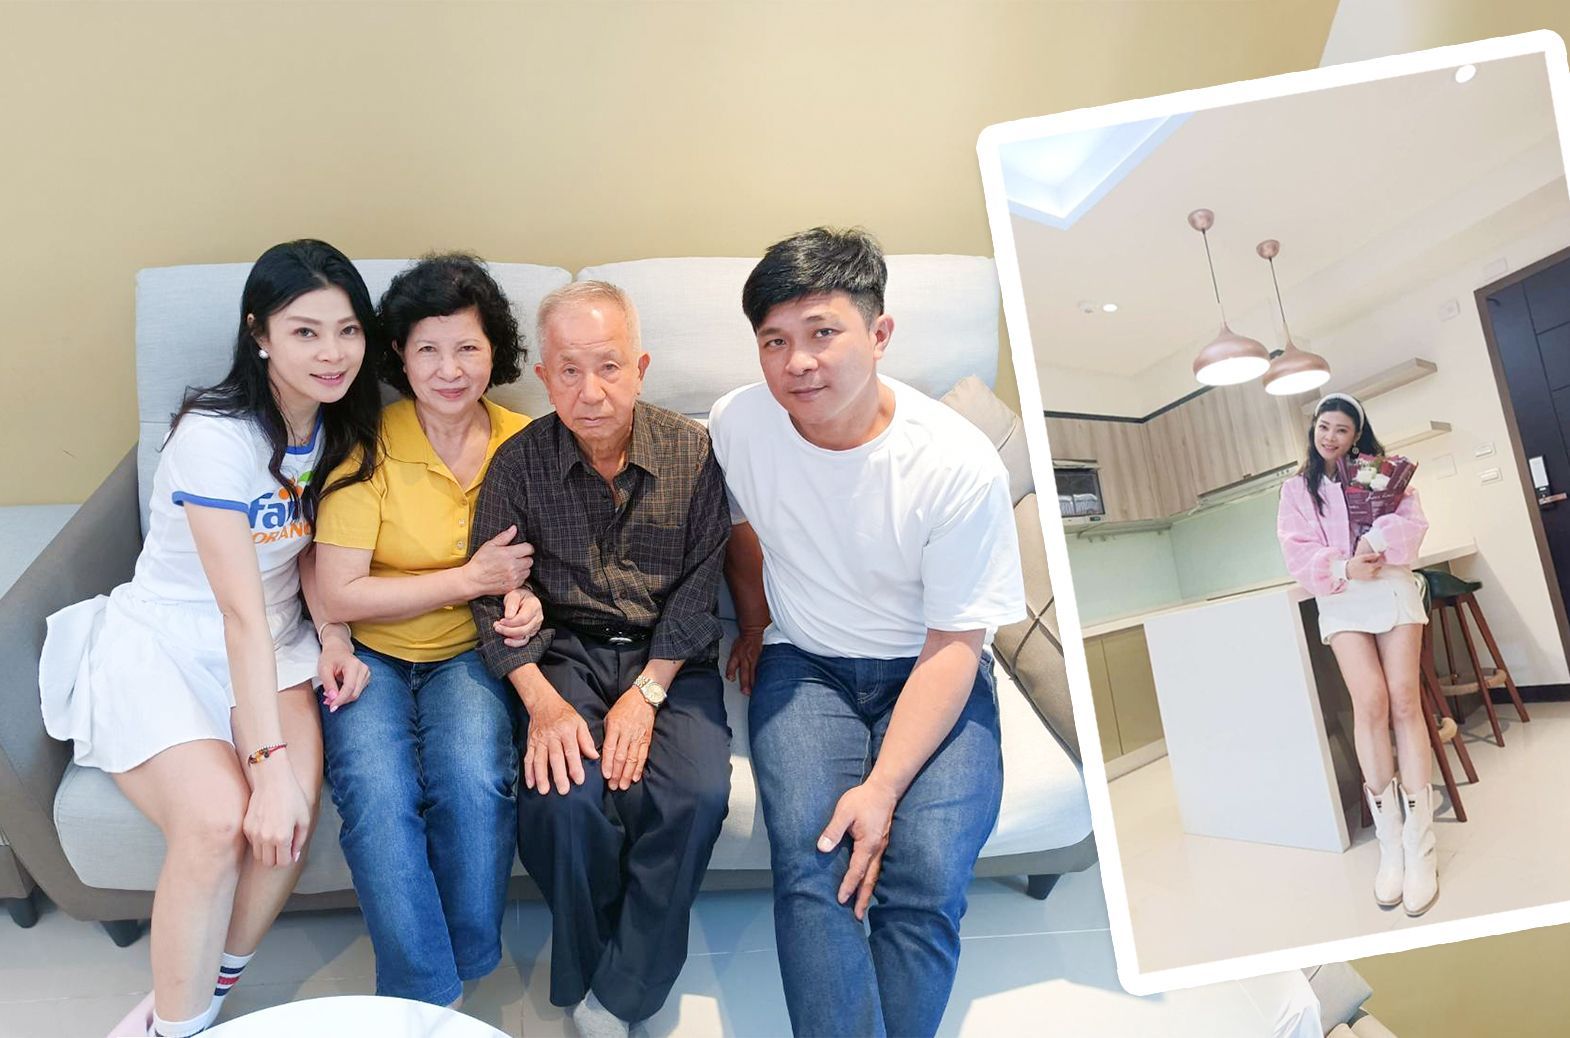 康成志業保健電銷的成功來自於其對員工的關懷和重視，陳惠芳就是在這樣的工作環境中，全家人都感到開心和滿足。